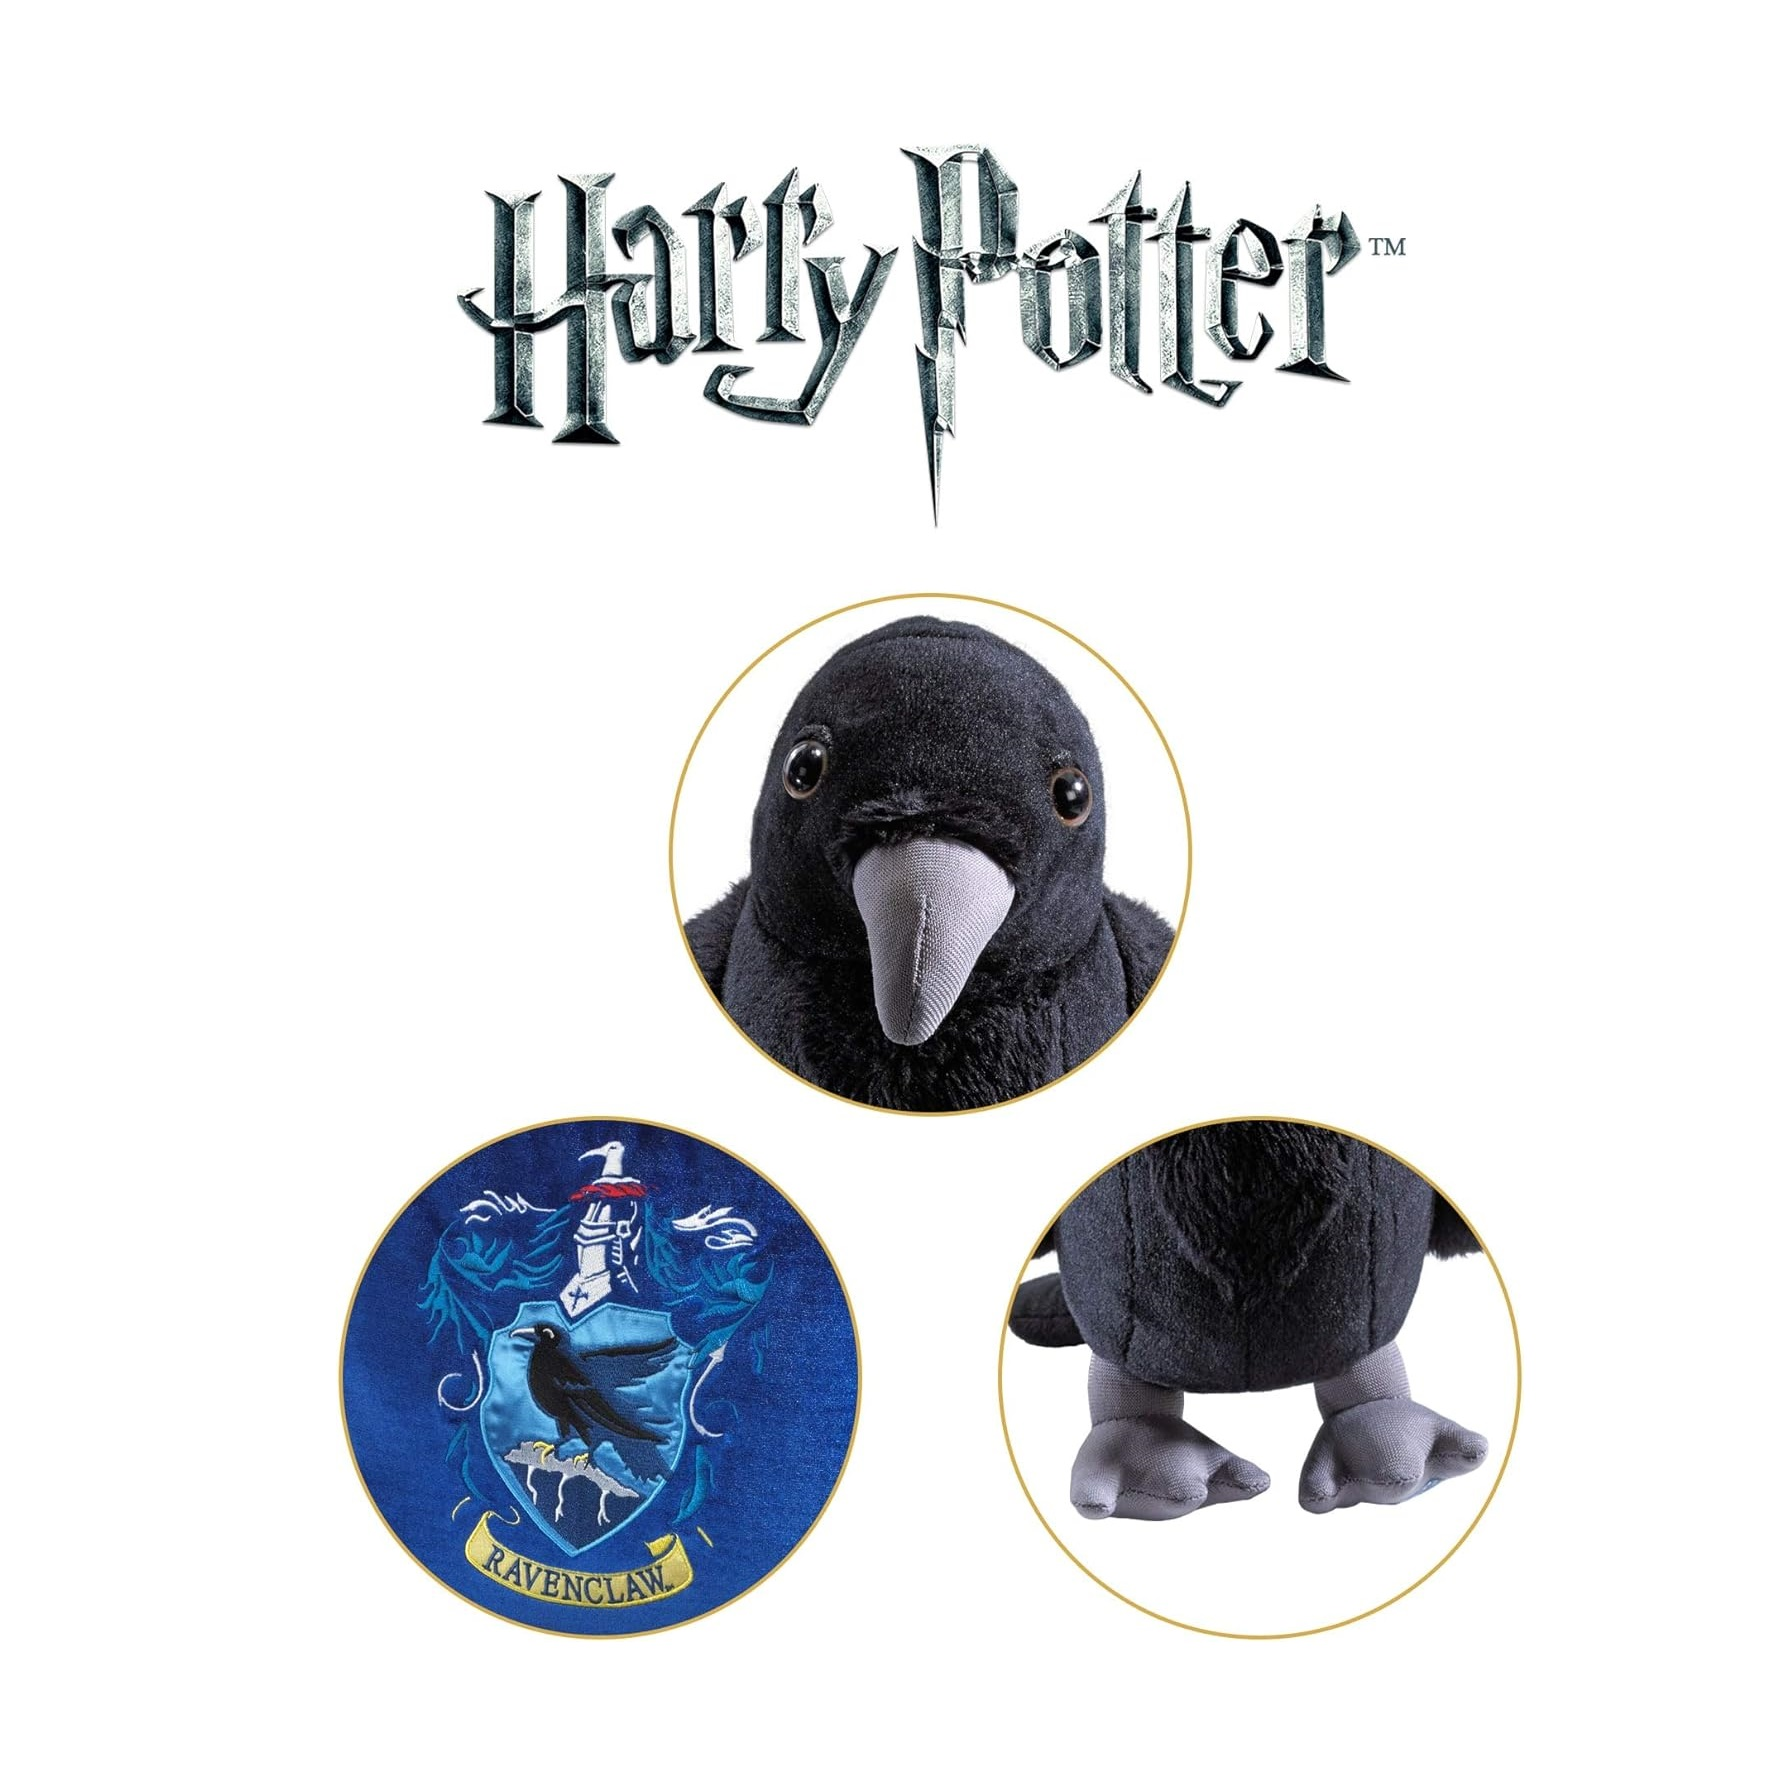 NOBLE COLLECTION Harry Potter House bunt Ravenclaw Mascot Kissen Plüschfigur mit Plüschfigur